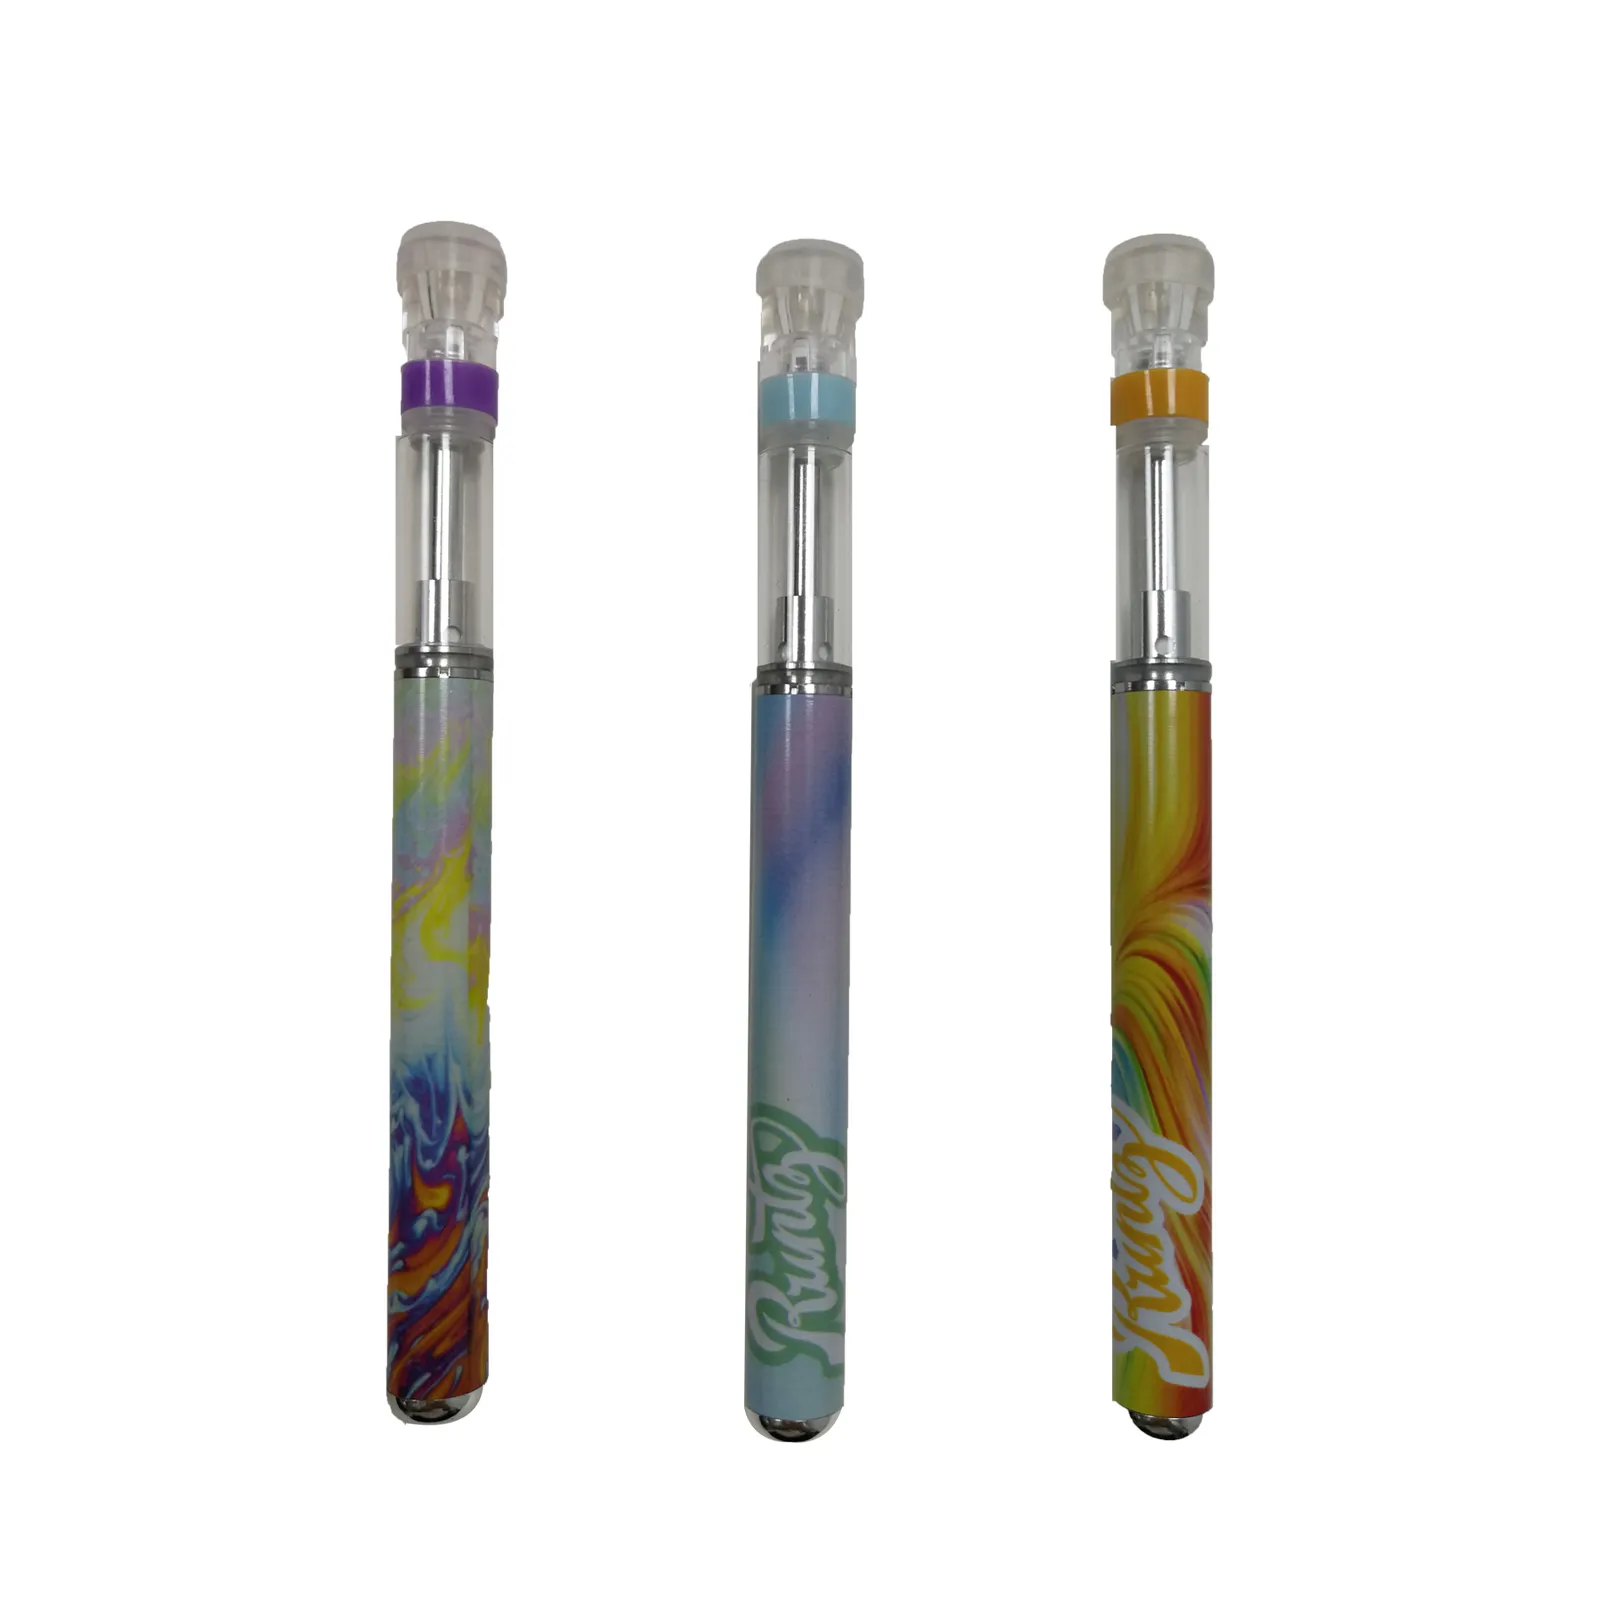 Penna monouso runty penna vape cartuccia vuota sigarette elettroniche ricaricabili da 1 ml alta potenza nuovo design di vetro bocca runtz vapes cartucce con kit di imballaggio